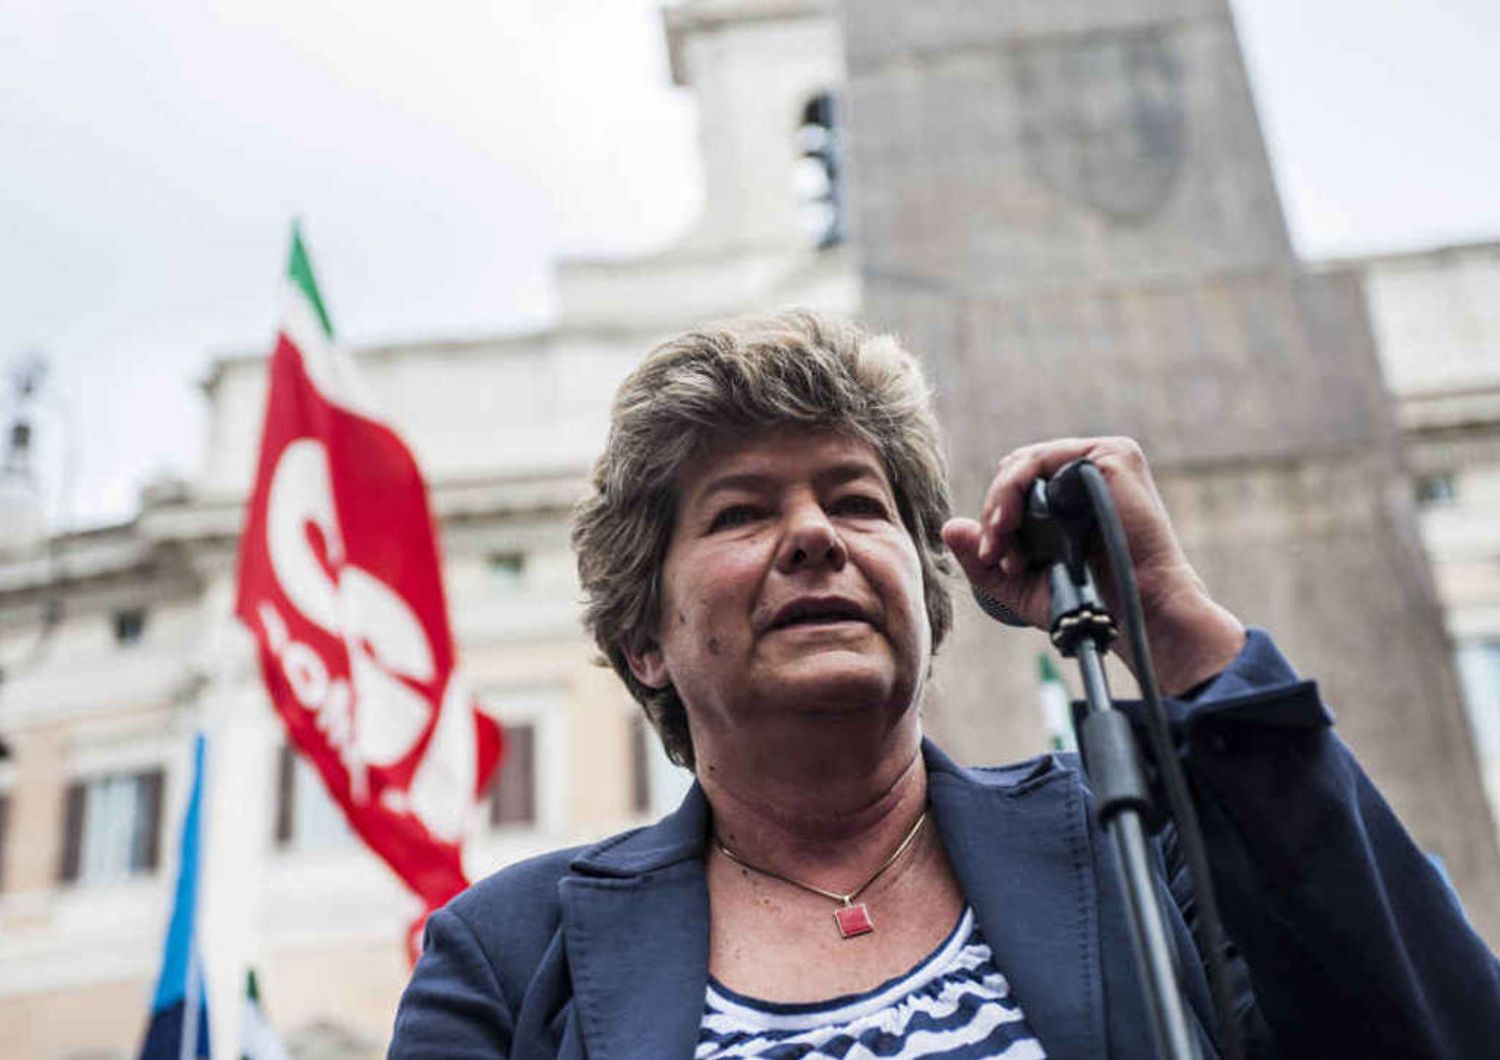 Lavoro: Camusso attacca Renzi "Propone il modello Thatcher"